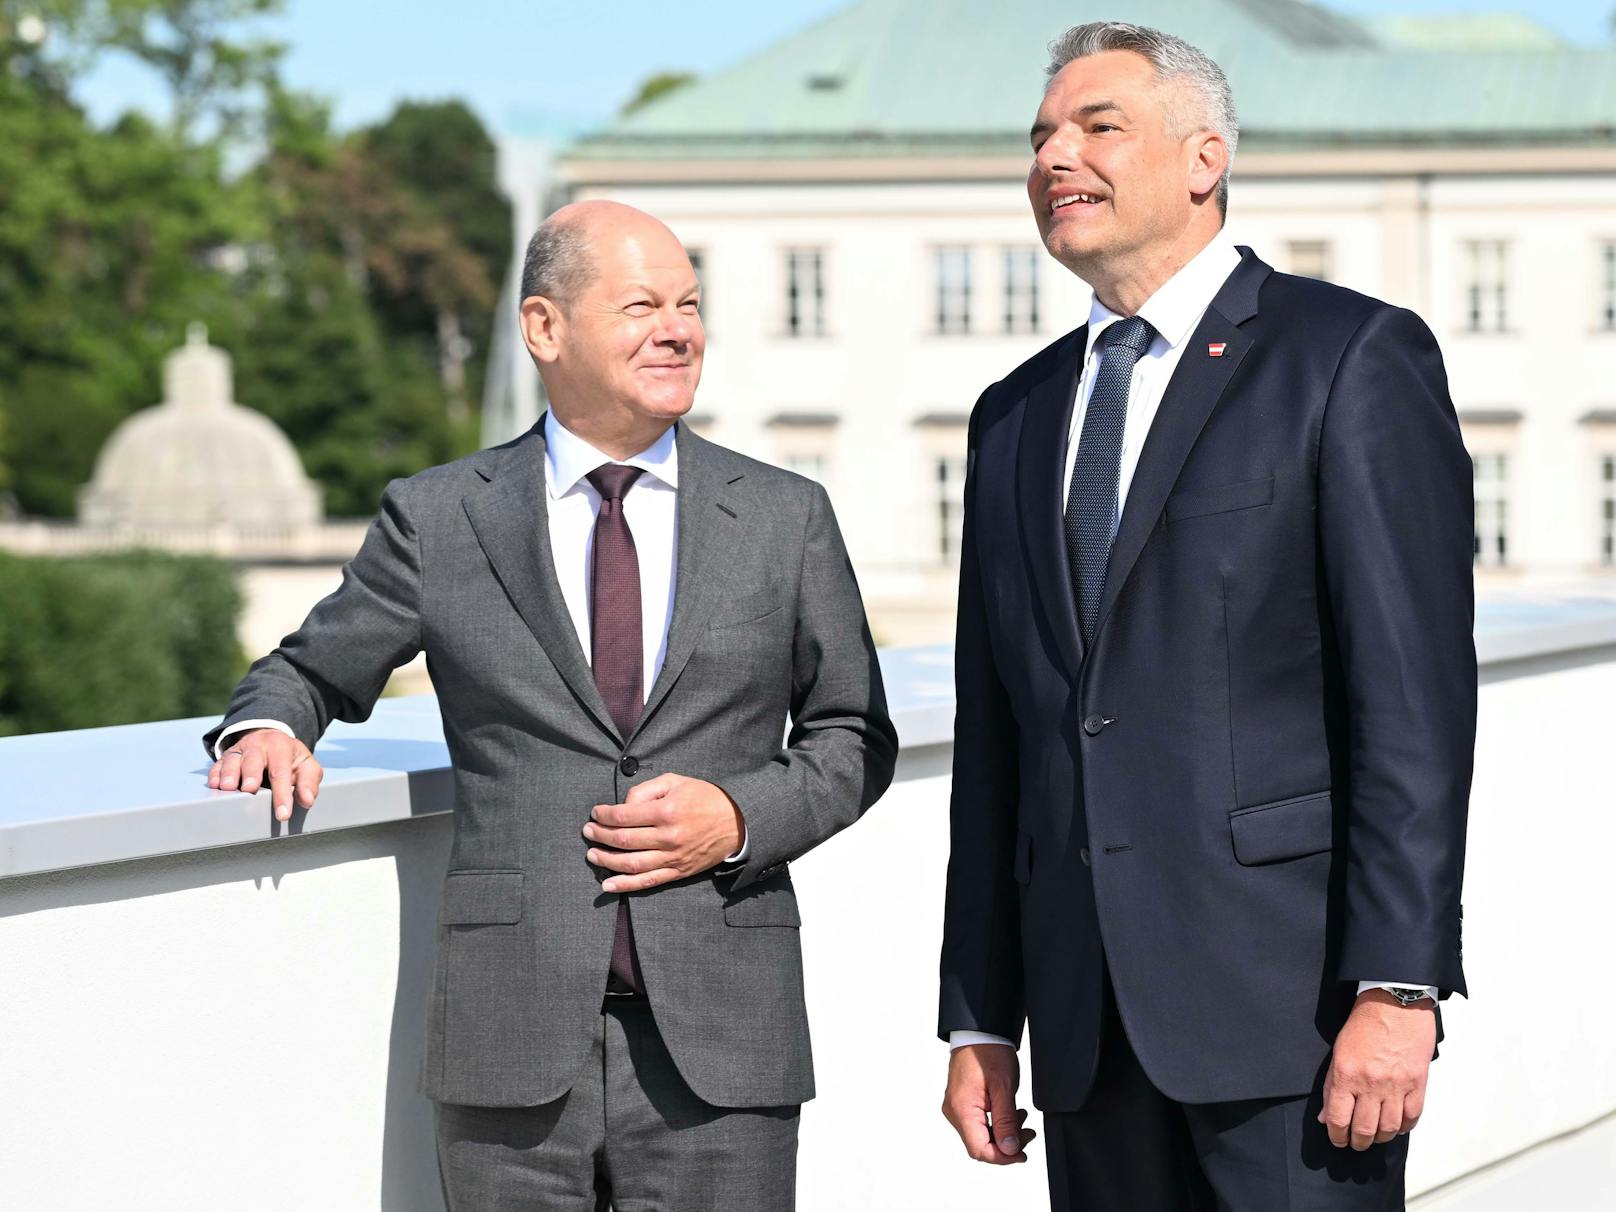 Bundeskanzler Karl Nehammer hat heute den deutschen Bundeskanzler in Salzburg empfangen. Es ist Olaf Scholz' erster Staatsbesuch in Österreich.